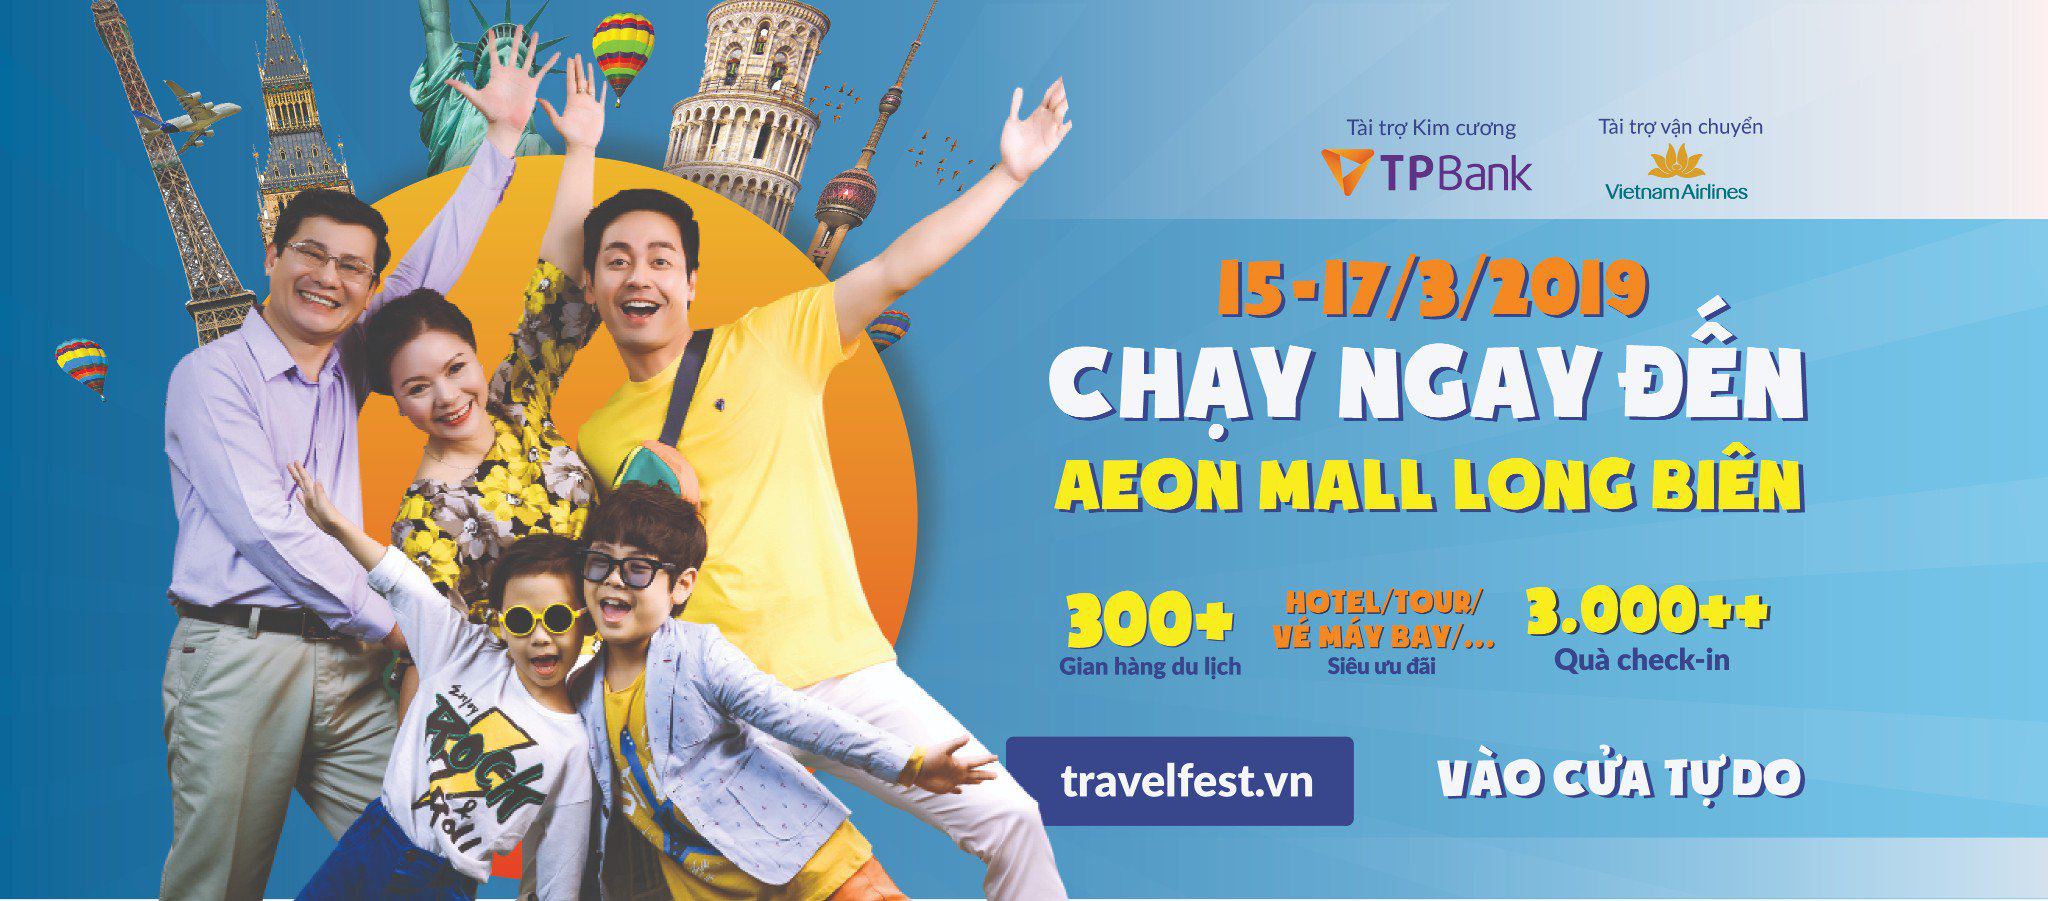 TRAVEL FEST 2019 - Lễ hội mua sắm Du lịch đầu tiên tại Việt Nam